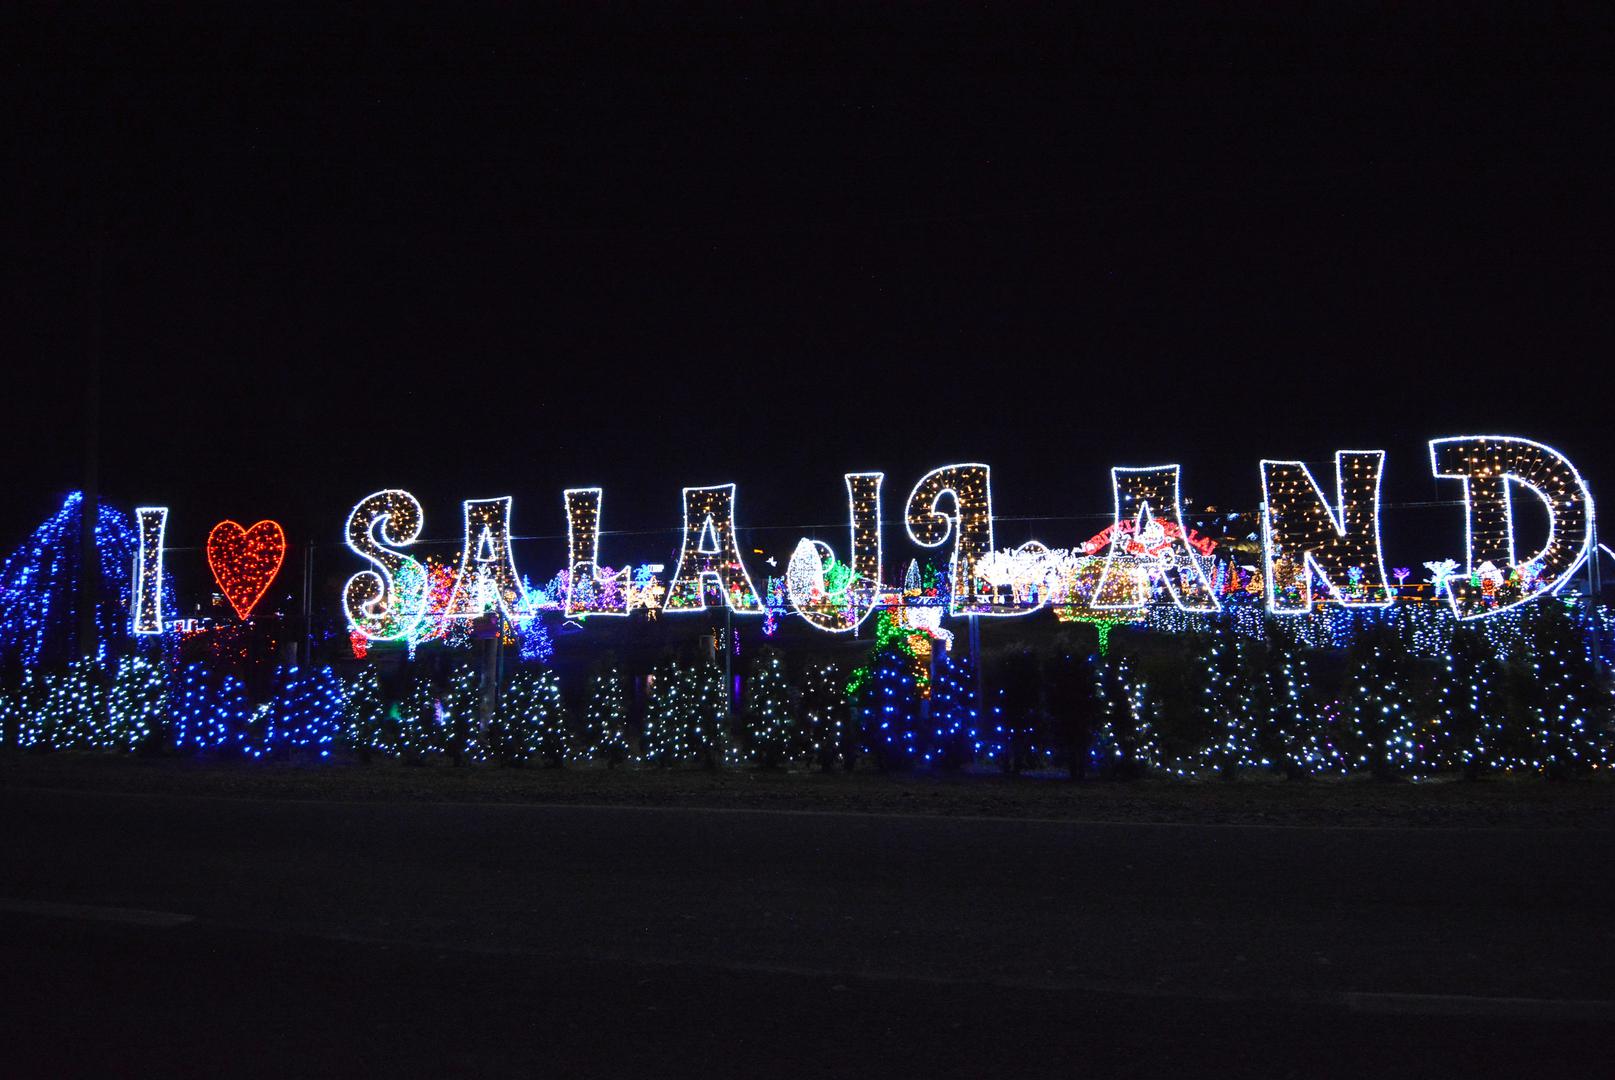 Posjetitelji će u raskošnom božićnom ugođaju moći uživati do 13. siječnja 2019. godine.